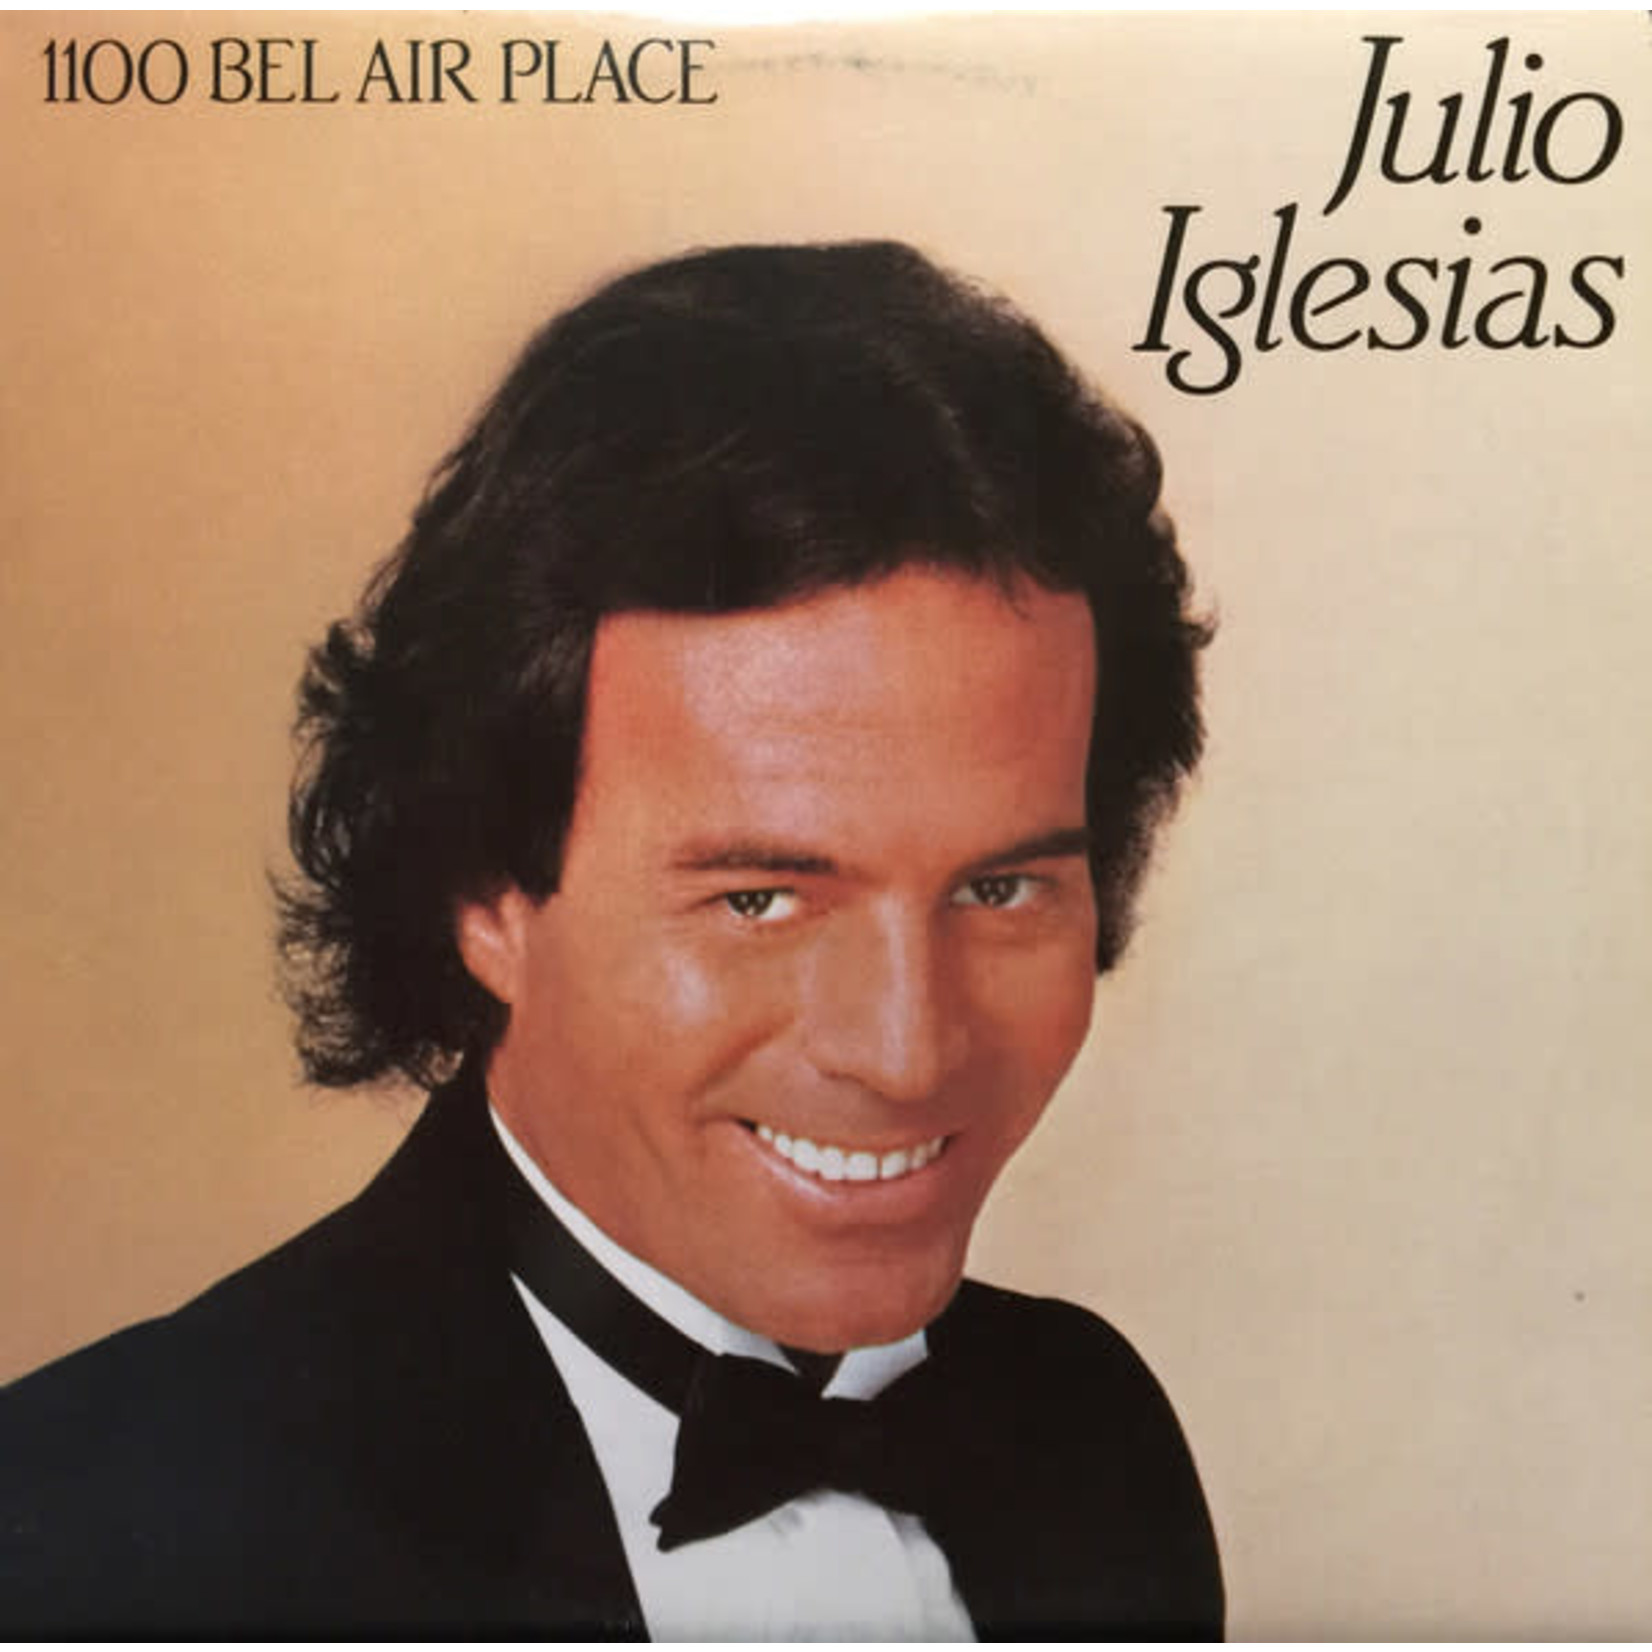 Julio Iglesias Julio Iglesias – 1100 Bel Air Place (VG+, 1984, LP, Columbia – QC 39157)